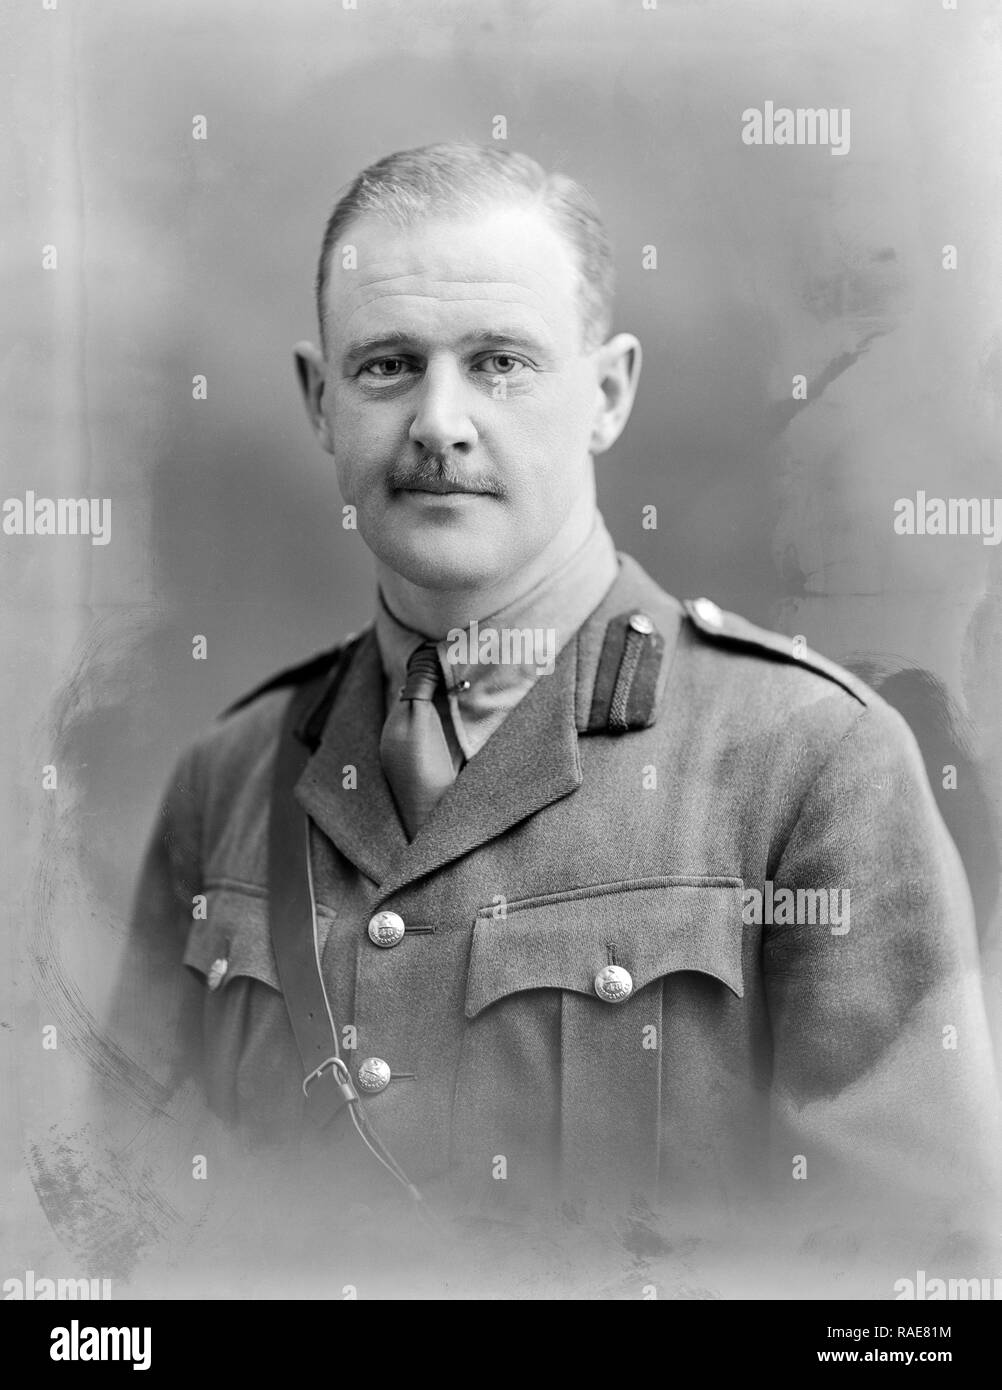 Foto am 11. Januar 1916 berücksichtigt. Kapitän Cockhrane der 48th Highlanders von Kanada. Studio portrait Foto an der berühmten Bassano Studios in London aufgenommen. Stockfoto